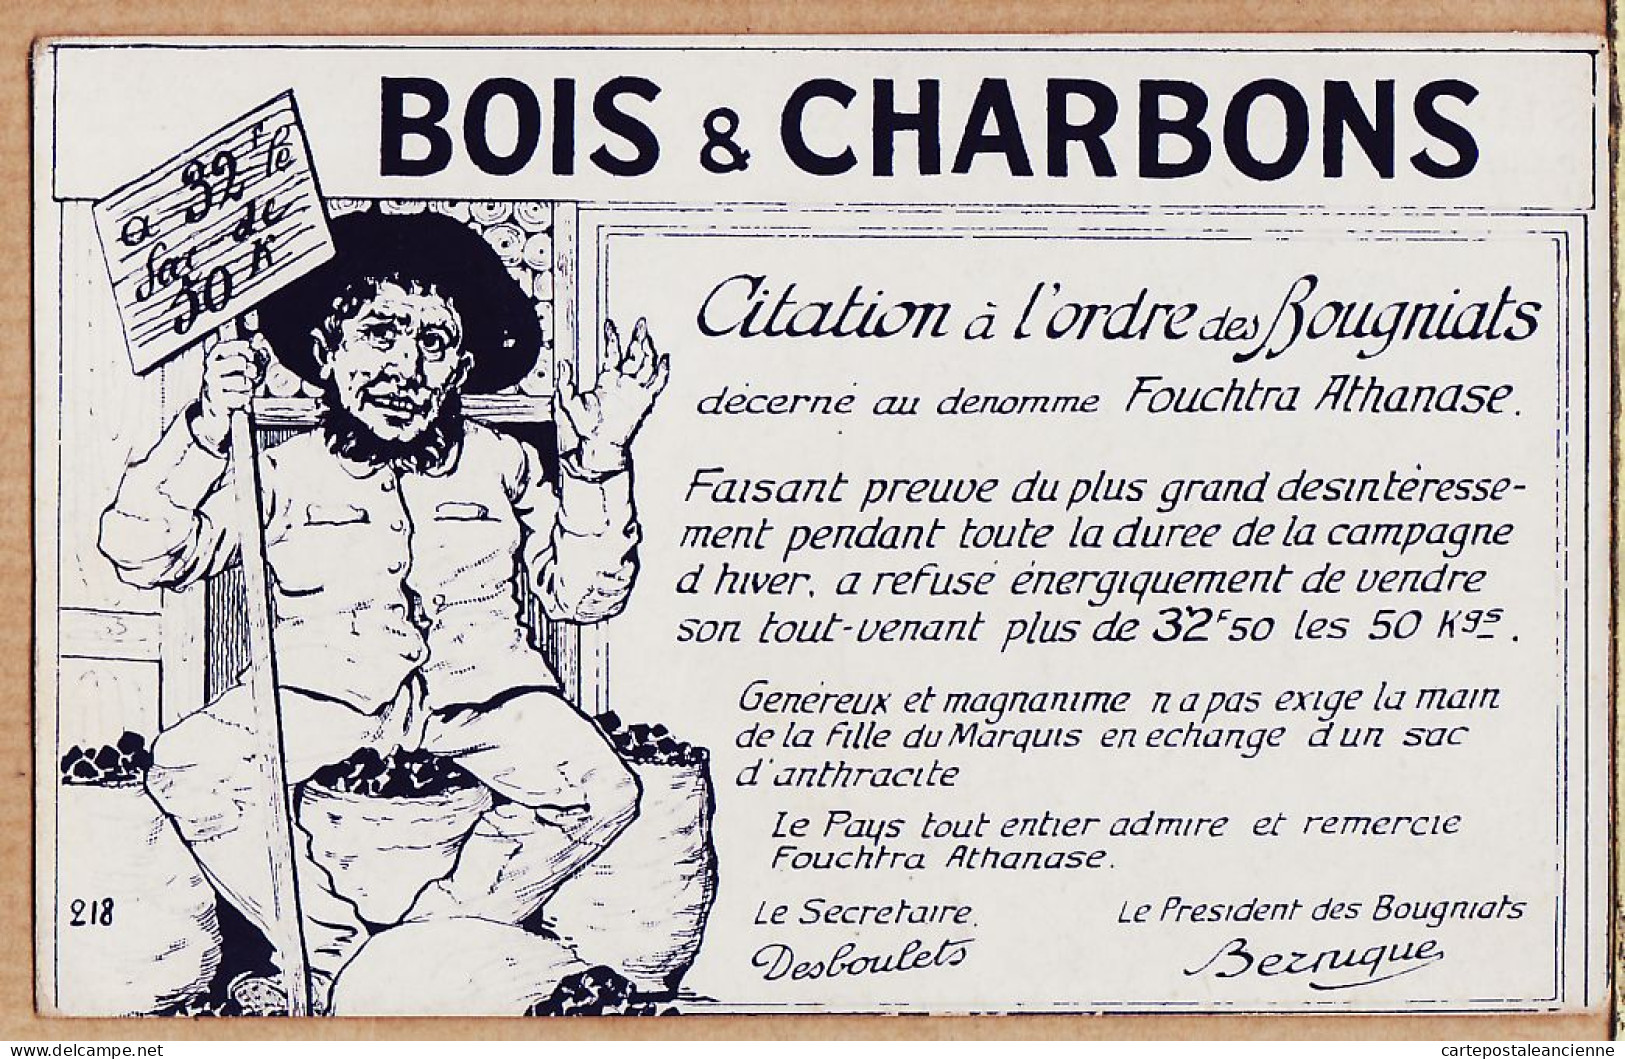 05435 / ⭐ ◉ BOIS CHARBONS Citation ORDRE Des BOUGNIATS à FOUCHTRA ATHANASE Par DESBOULETS BEZNIQUE 1915s Visa 218 - Mines